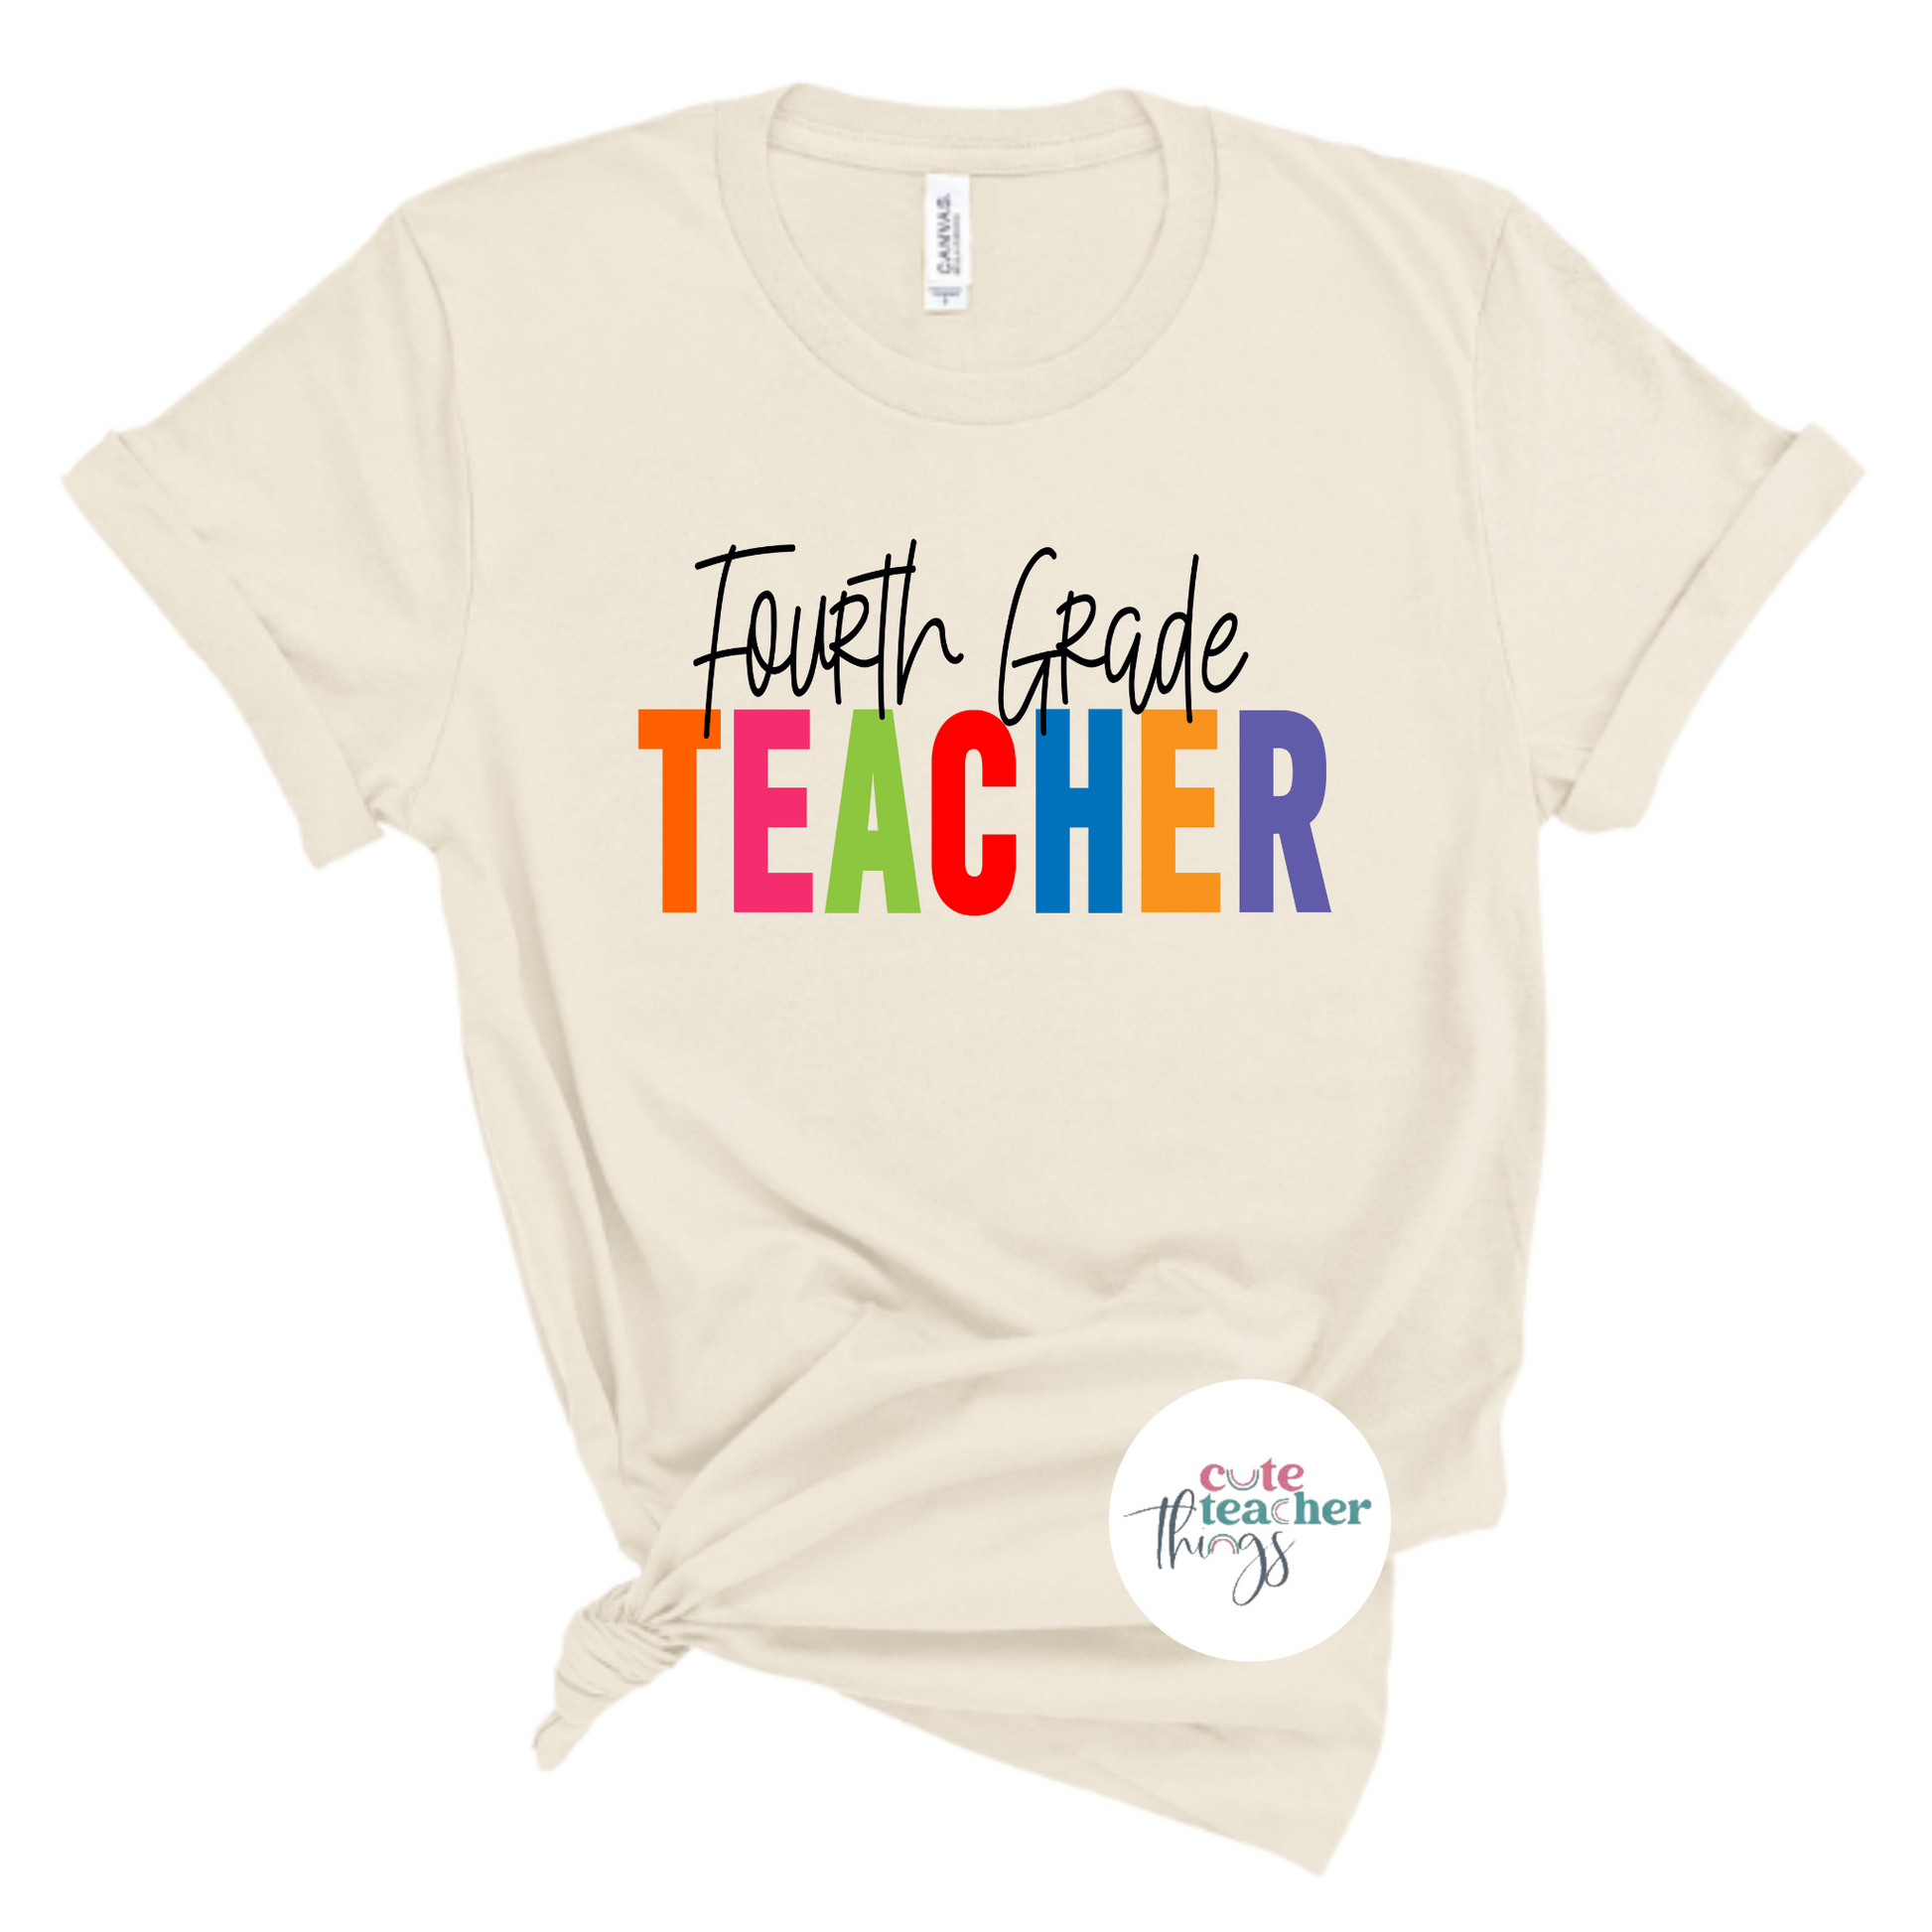 school staff apparel, teachers day shirt, teacher's unisex t-shirt